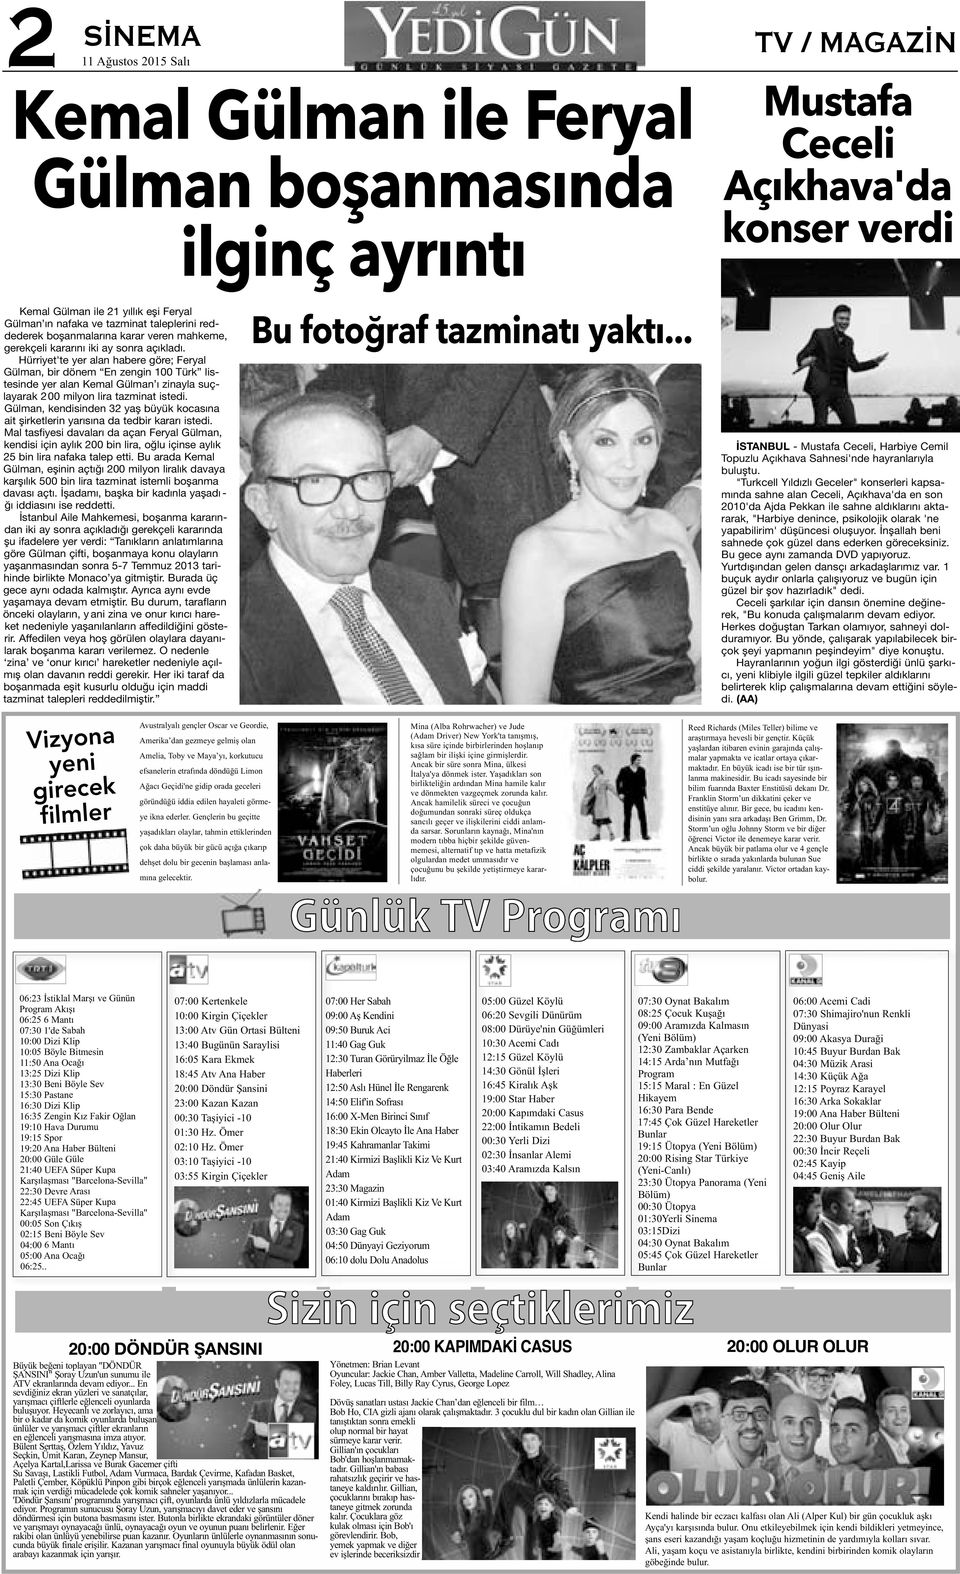 Hürriyet'te yer alan habere göre; Feryal Gülman, bir dönem En zengin 100 Türk listesinde yer alan Kemal Gülman ı zinayla suçlayarak 2 00 milyon lira tazminat istedi.